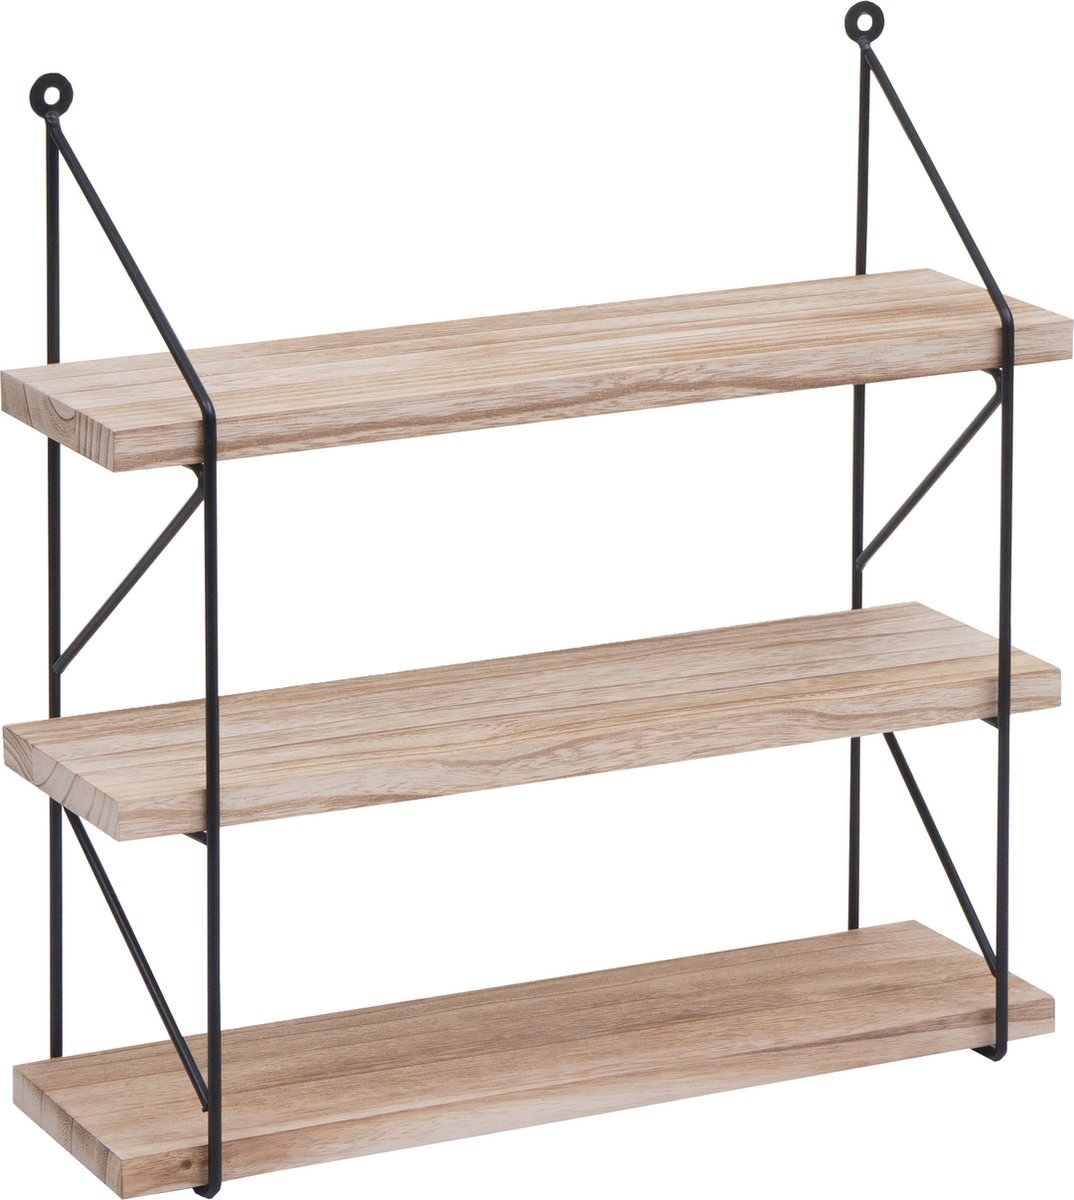 Wandplank MCW-K78, hangende plank zwevende plank plank, 3 planken metaal massief hout industriële 40x40x13cm ~ natuurlijk